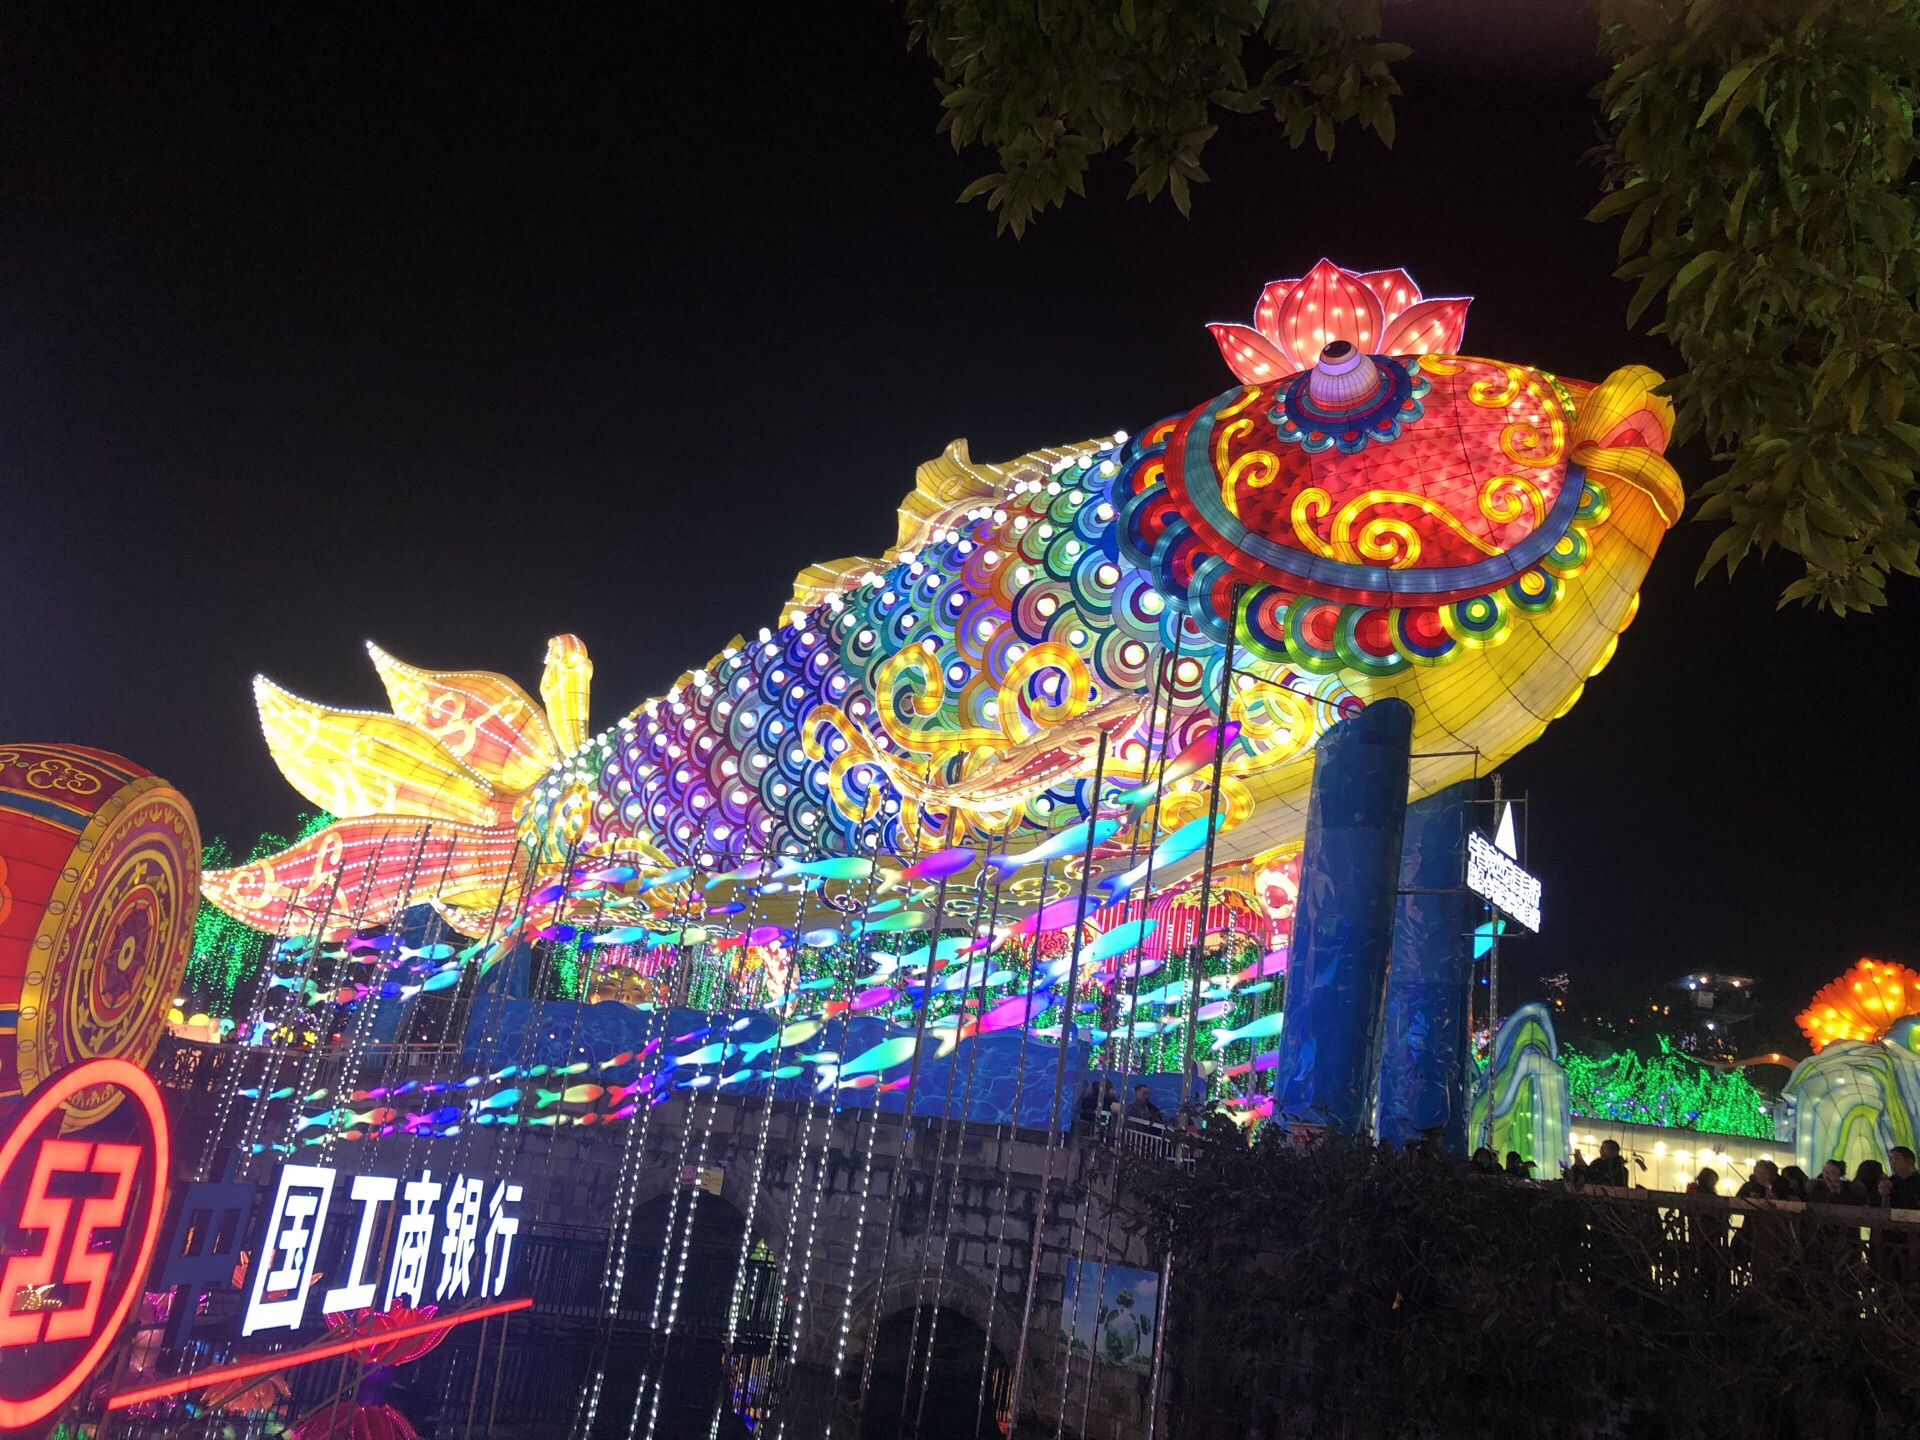 【携程攻略】自贡中国彩灯博物馆景点,自贡灯会久闻大名，今年第一次观看，感觉占地面积小于成都塔子山灯会…